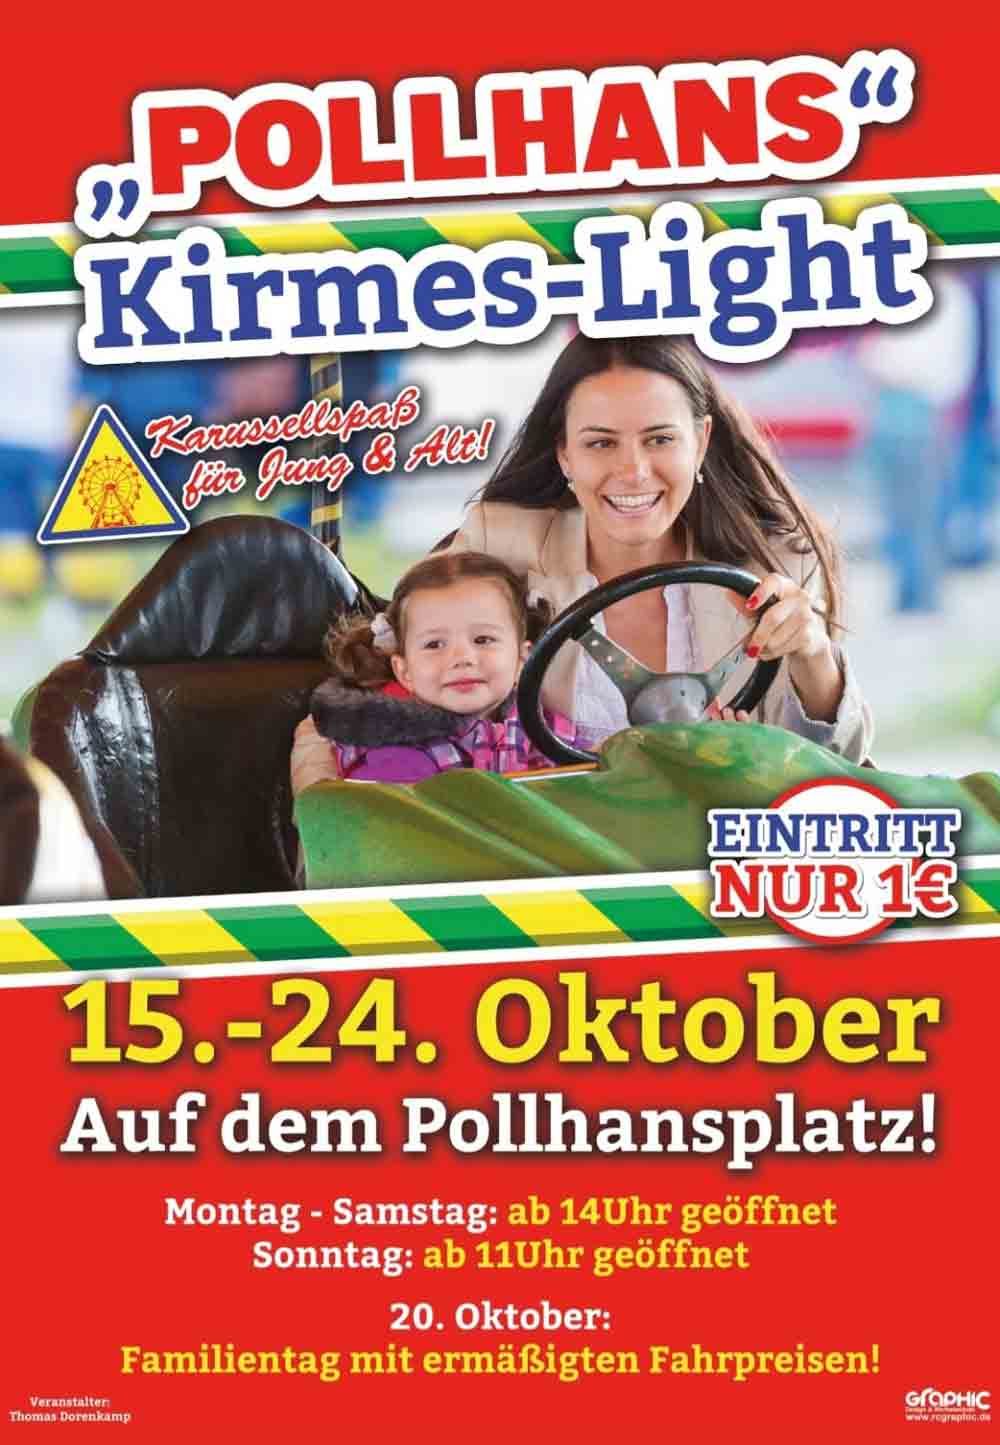 »Pollhans-Light« 2021, Kirmes-Light in Schloß Holte-Stukenbrock